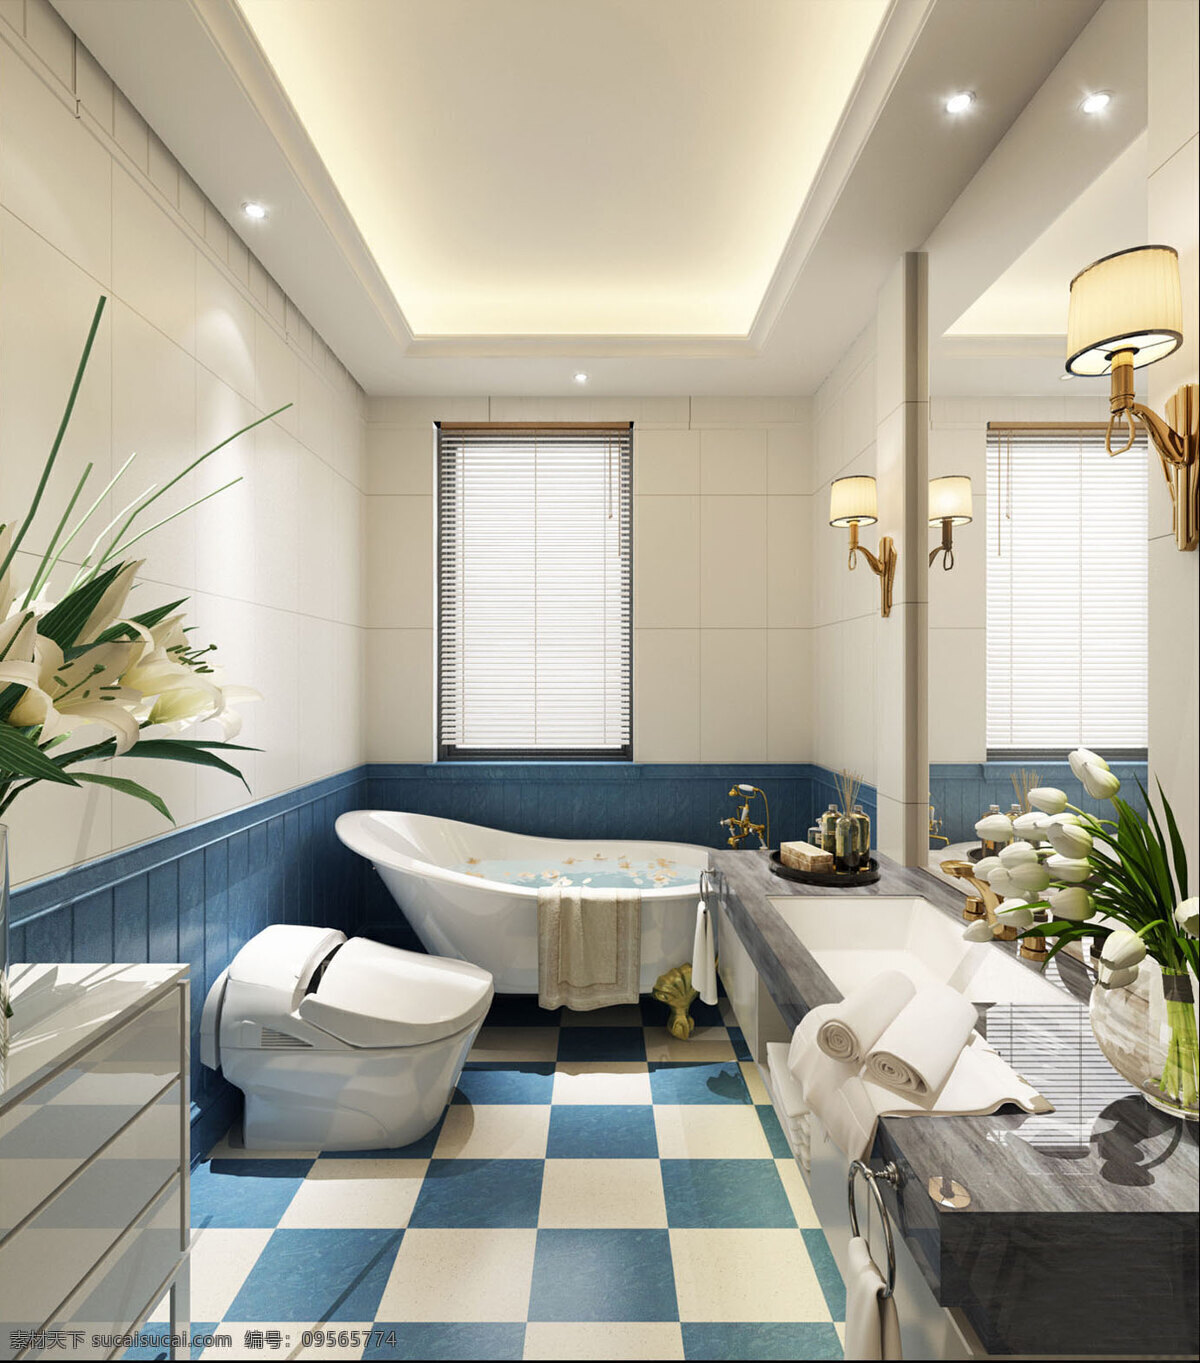 简约 浴室 欧式 效果图 室内 现代 室内设计 时尚 装修实景图 家装 华丽 装修设计 家居 典雅 家居设计图